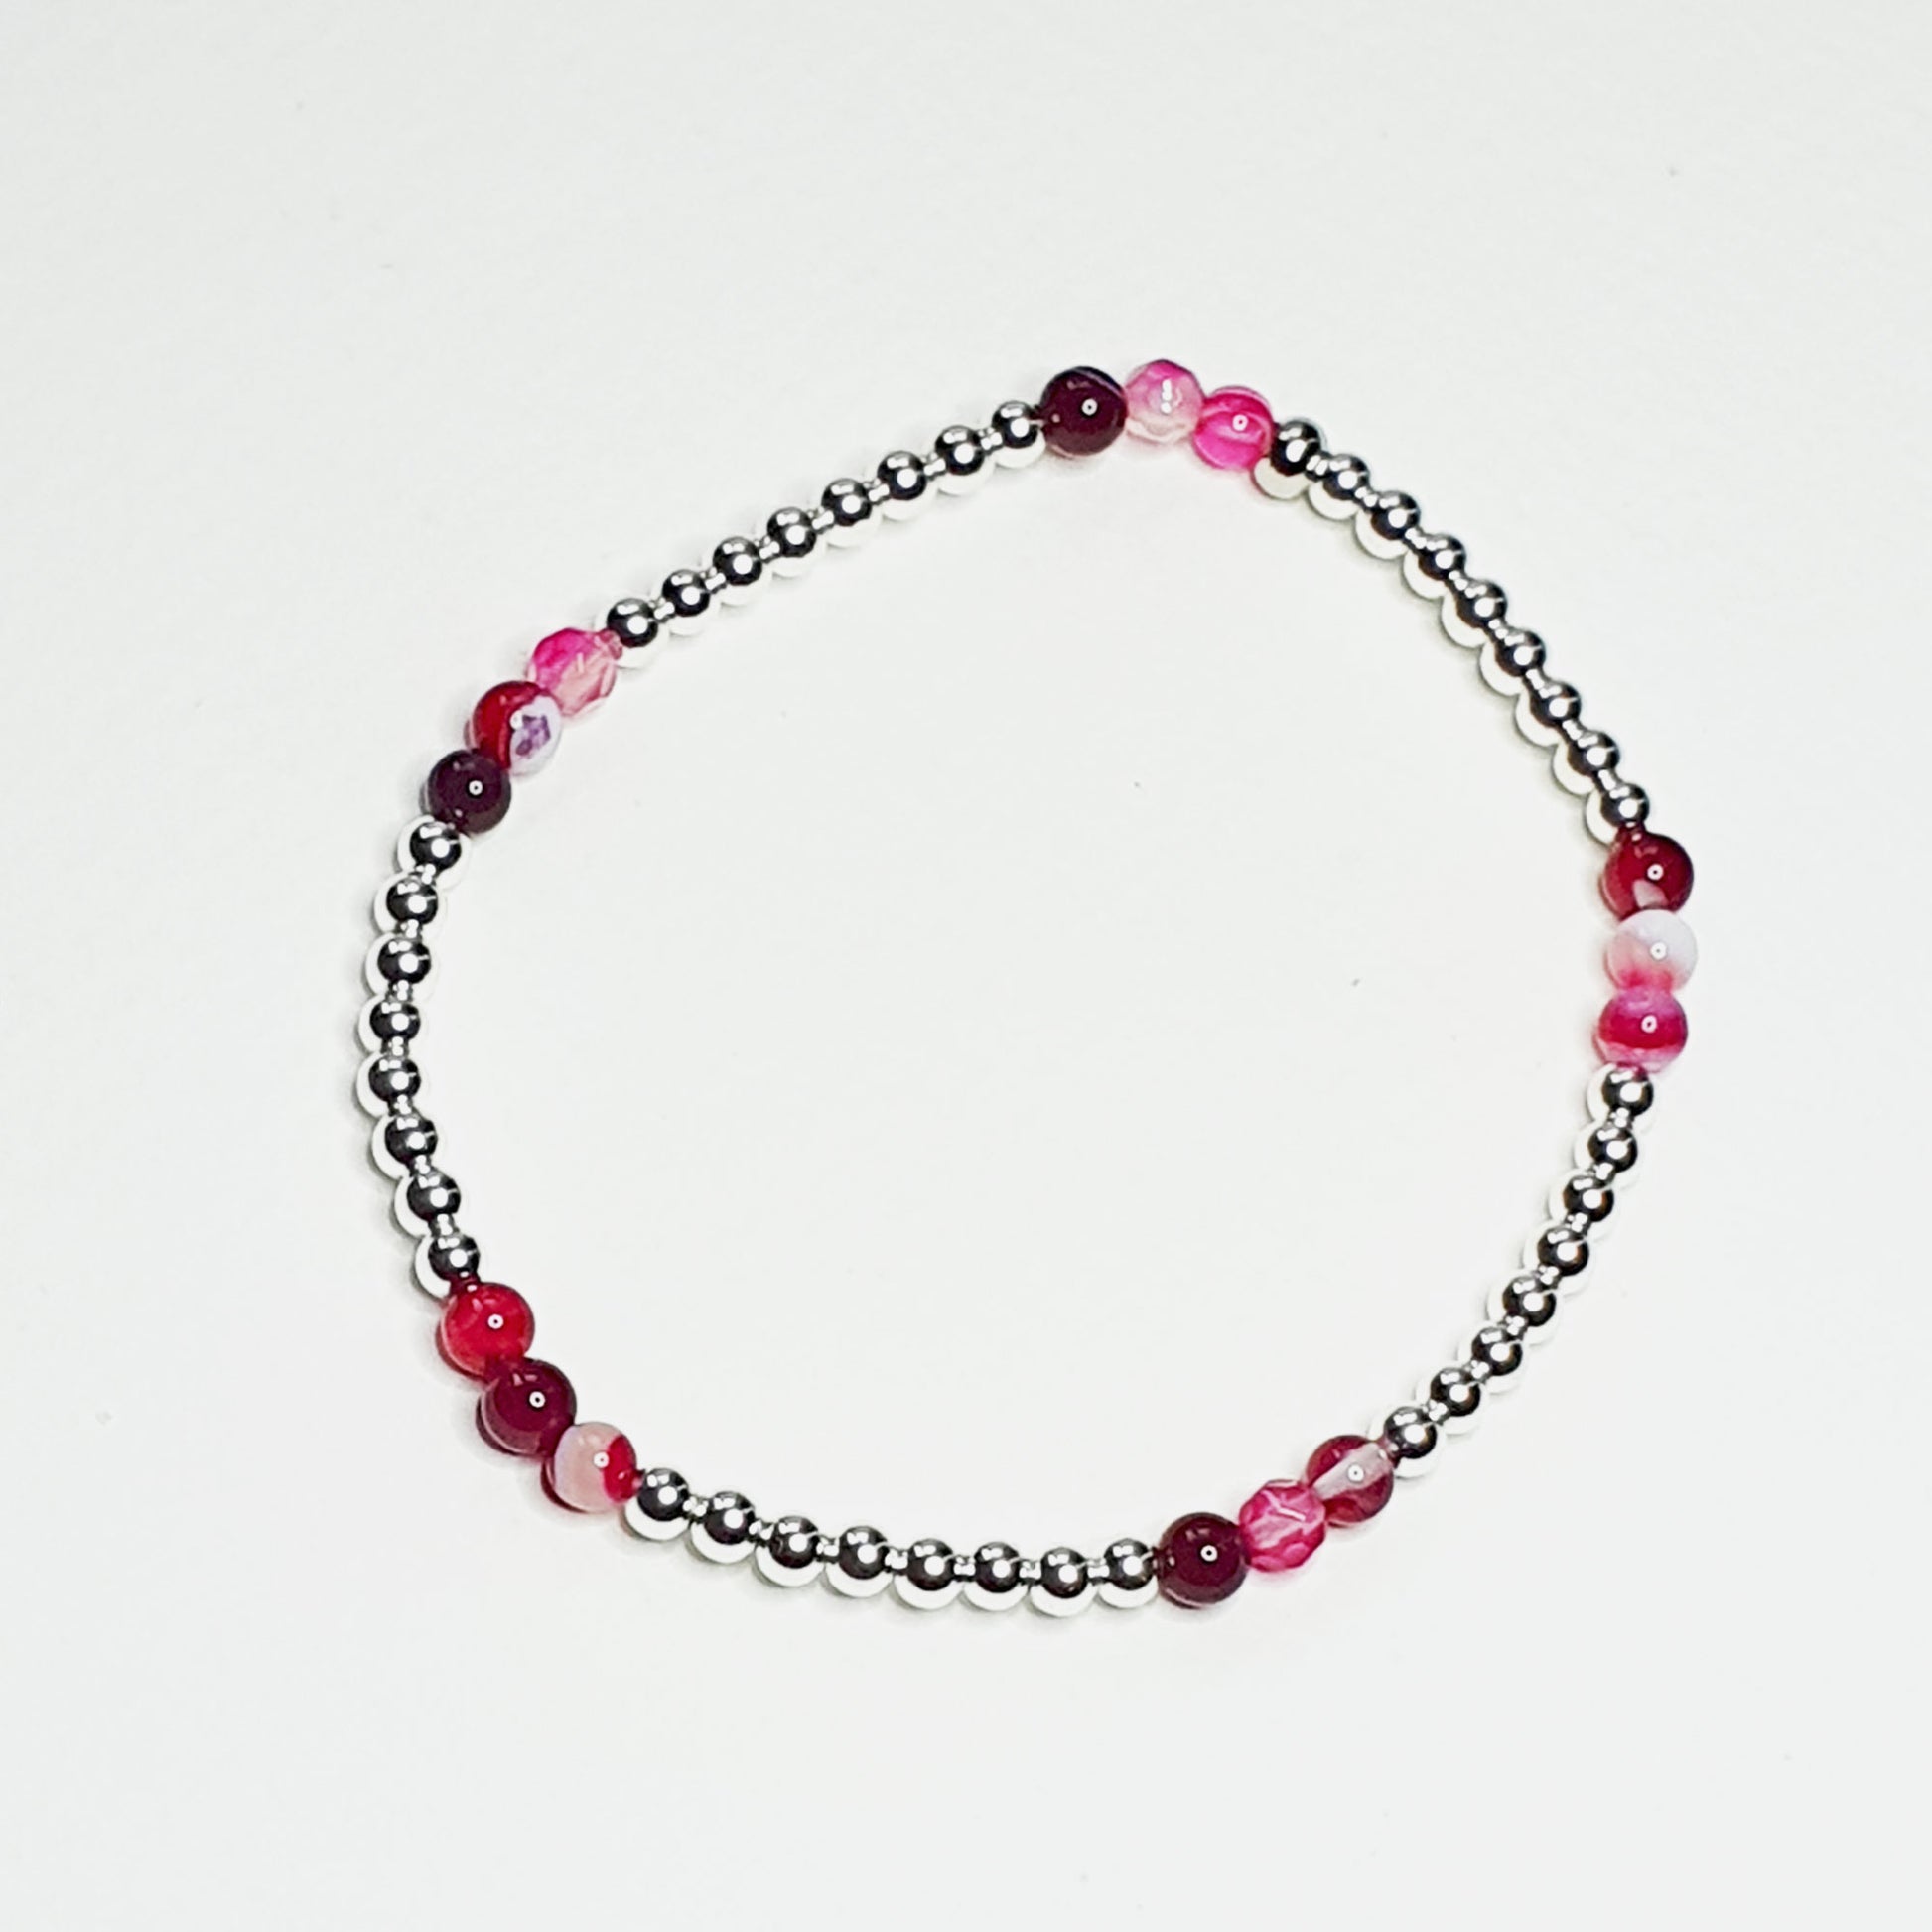 Pink agate inset bracelet